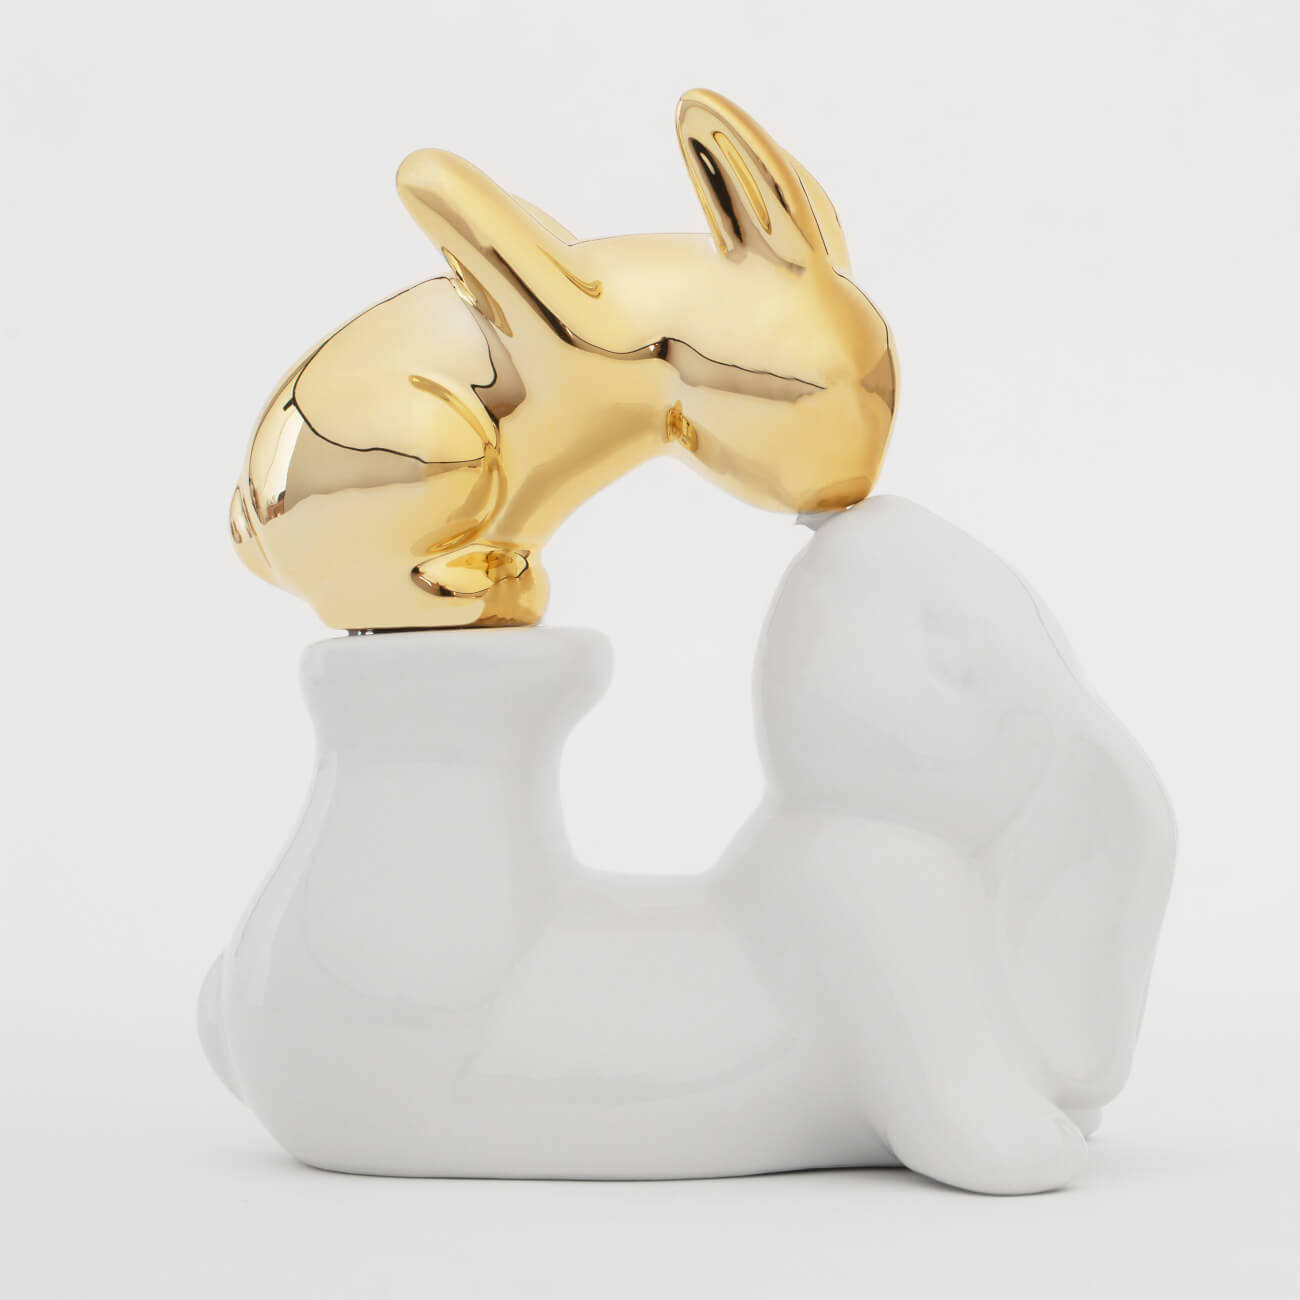 конфетница 28х16 см керамика бело золотистая кролики с плетенной корзиной easter gold Статуэтка, 14 см, керамика, бело-золотистая, Крольчиха и крольчонок, Easter gold